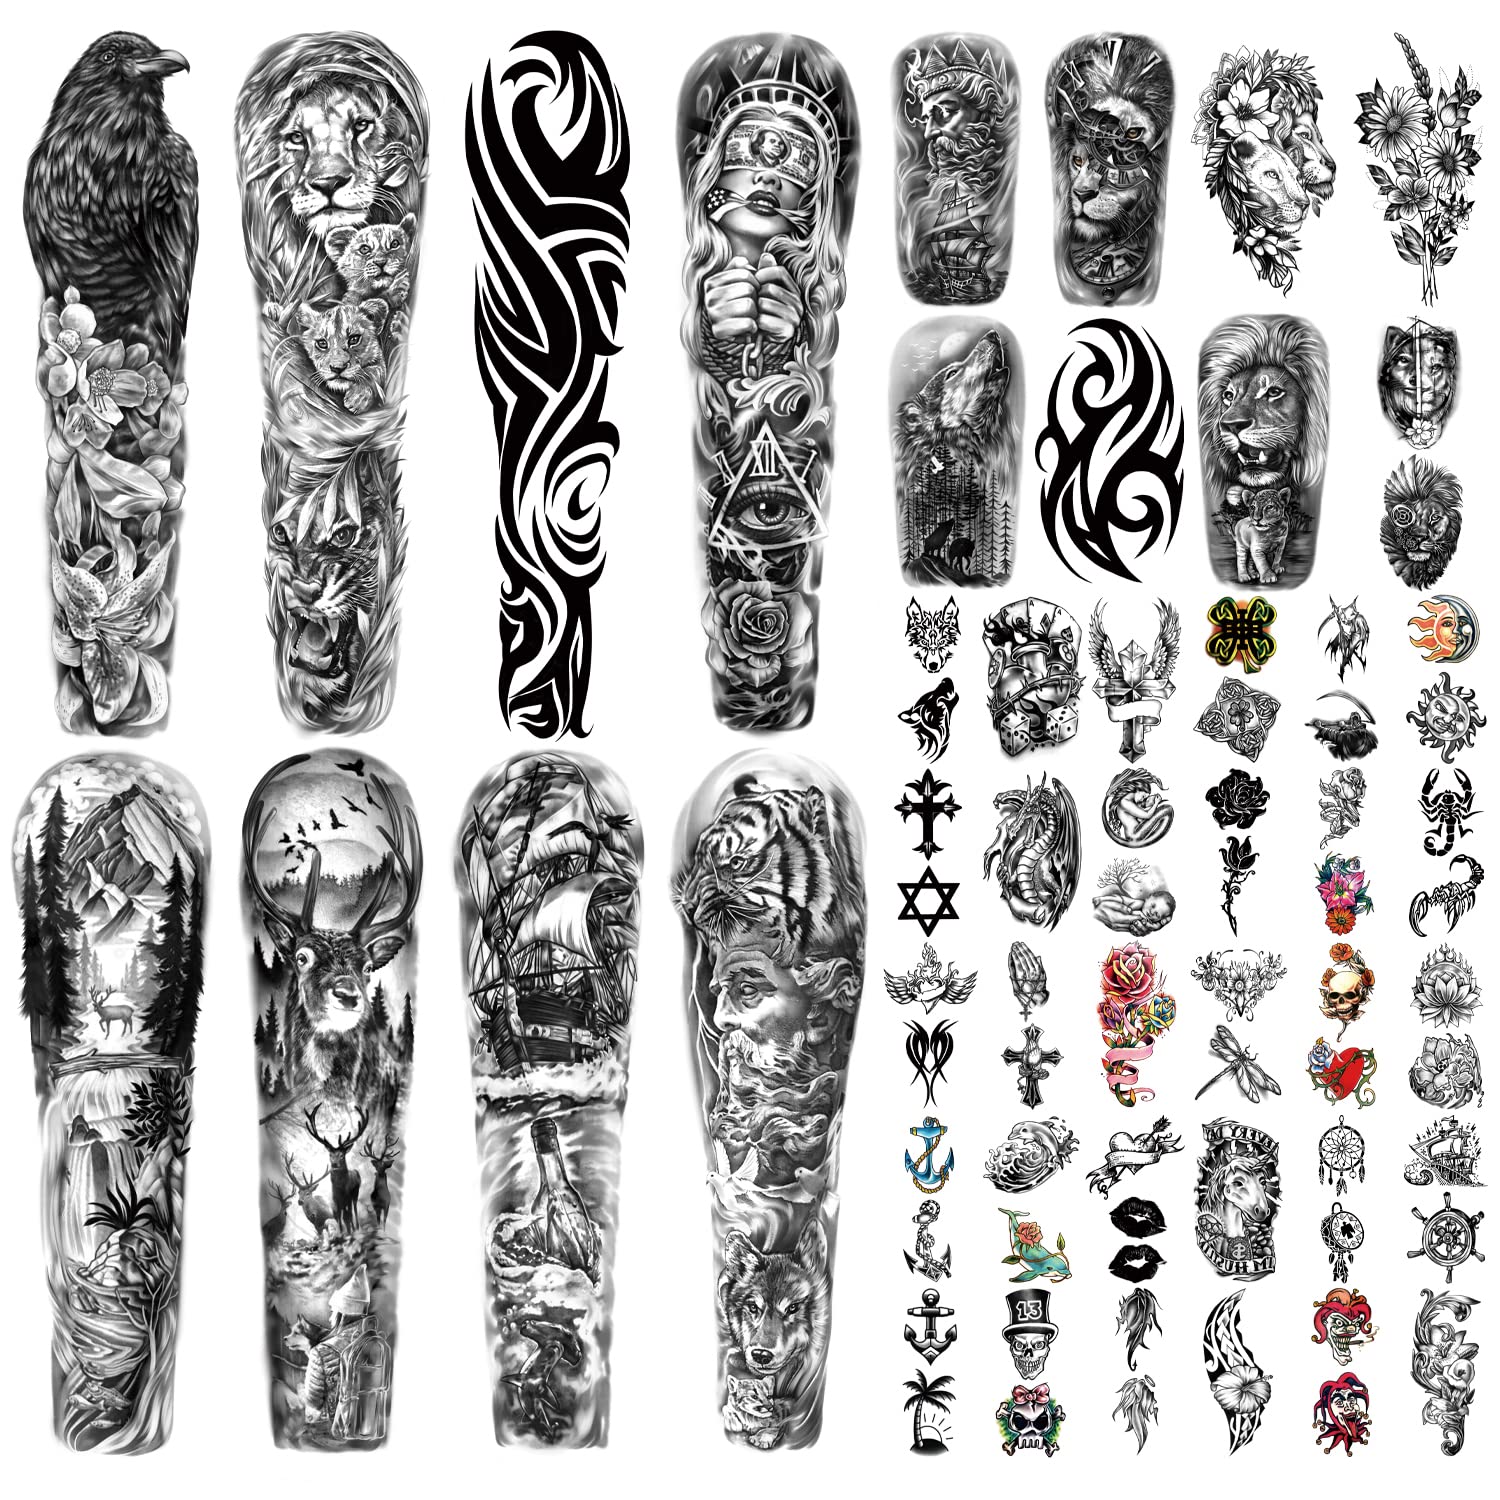 50 scorpion tattoo design ideas for men - Legit.ng